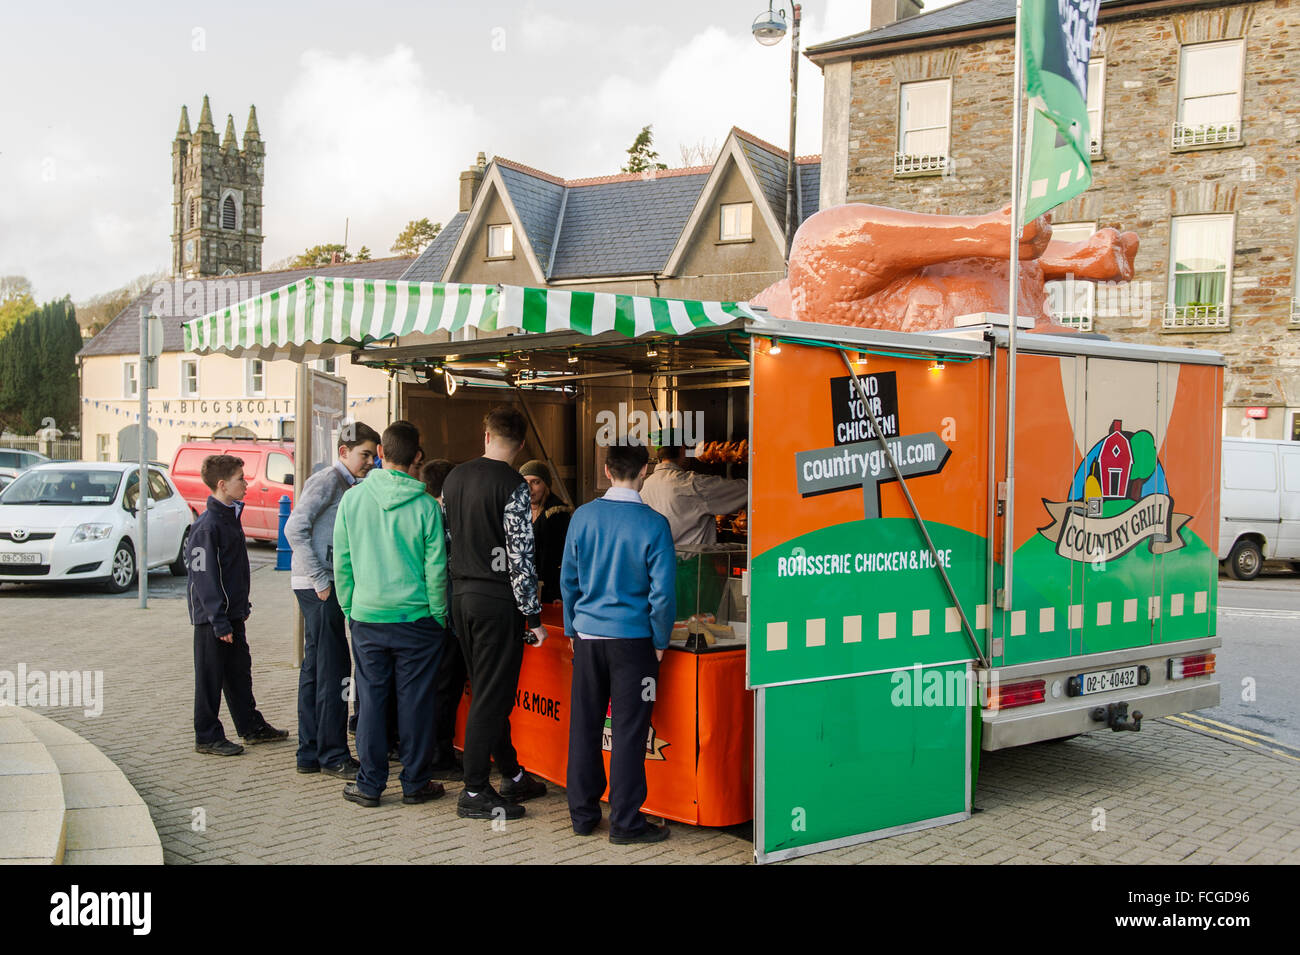 Groupe de garçons font la queue dans un van de restauration mobile, vendant des produits à base de poulet, au marché du vendredi à The Square, Bantry, Irlande. Banque D'Images